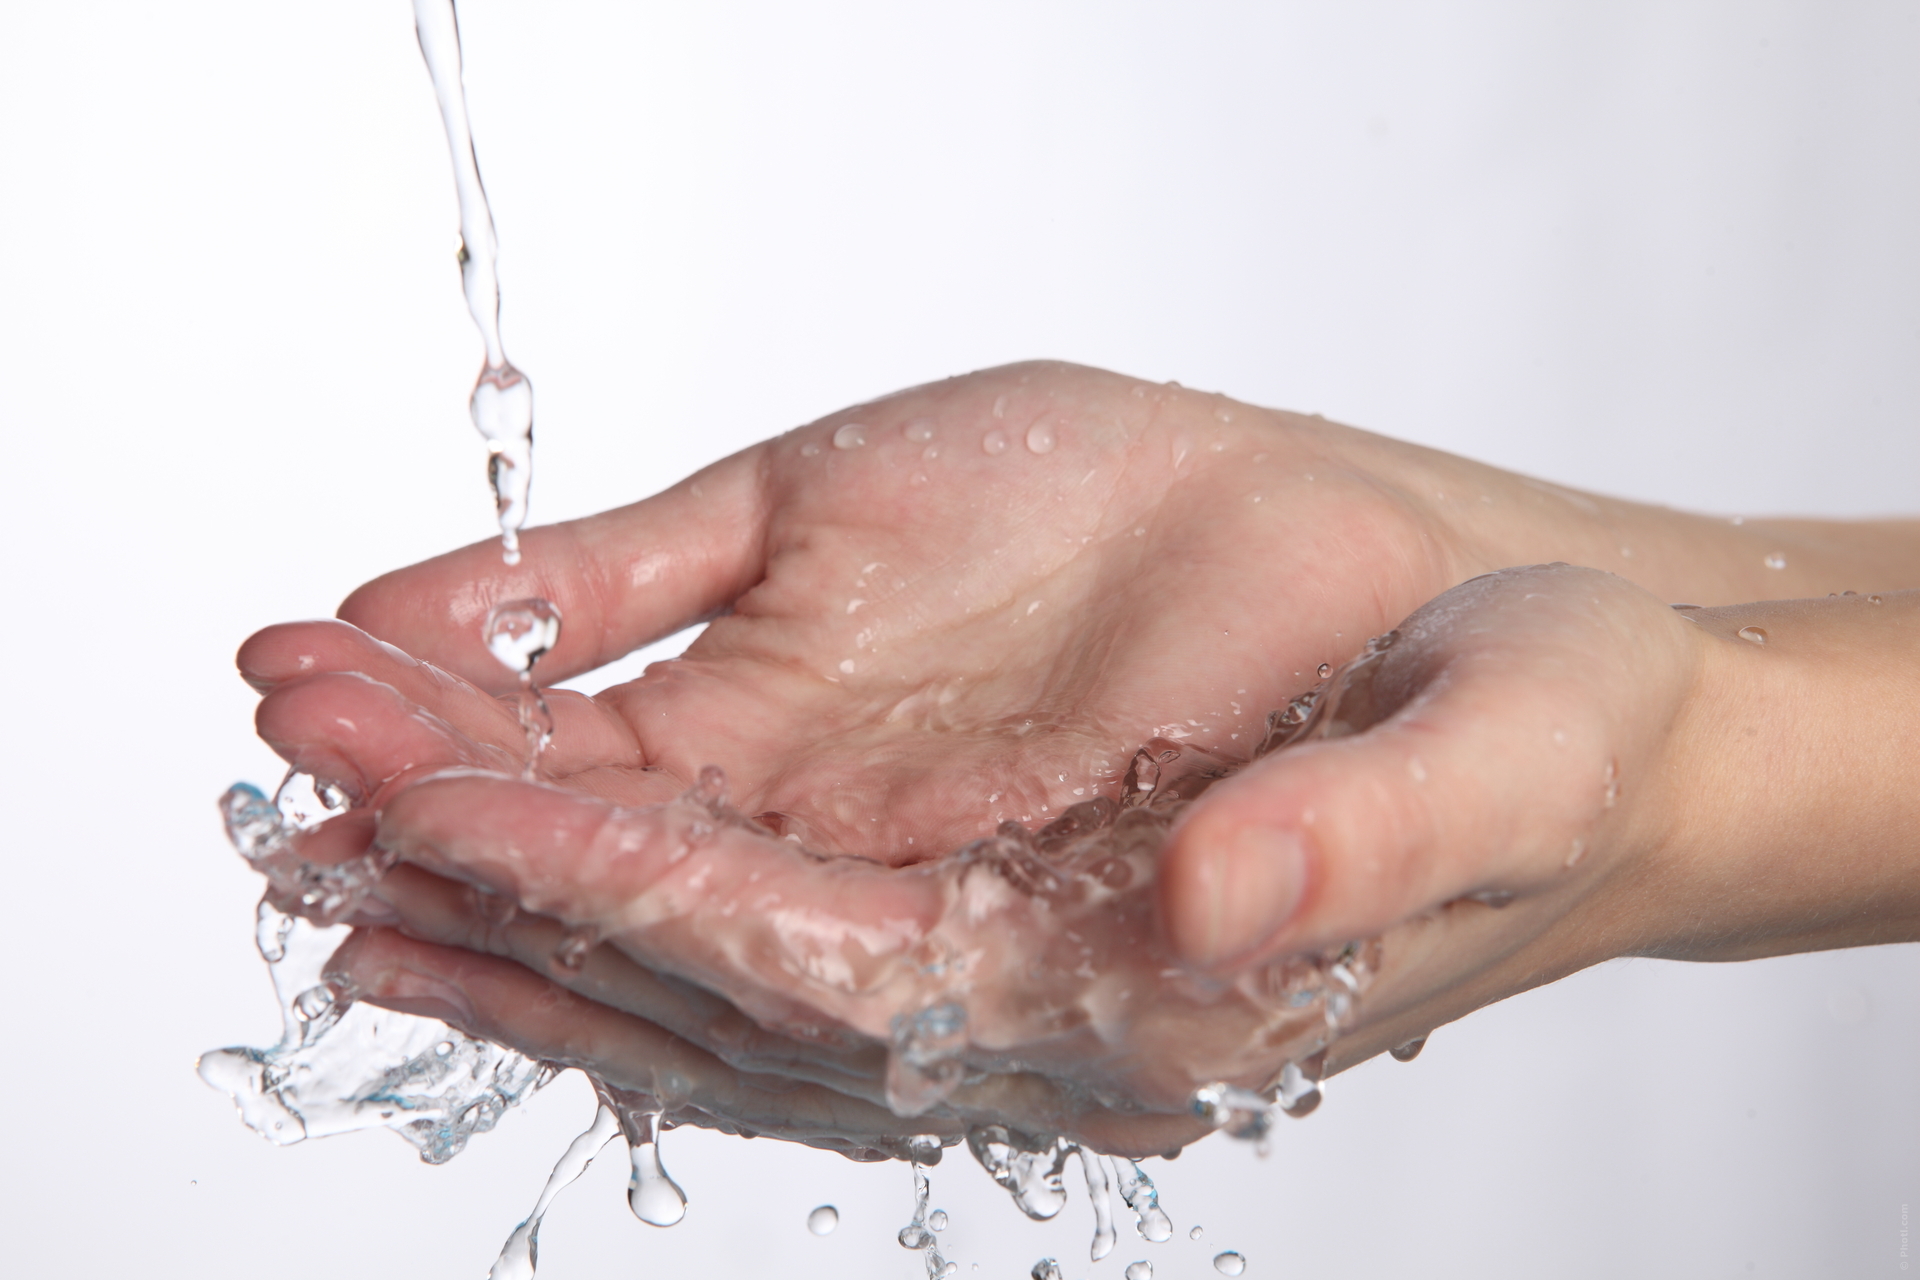 Смыть водой кровь. Мытье рук водой. Мытье рук под водой. Вода в руках. Руки помыть водой.